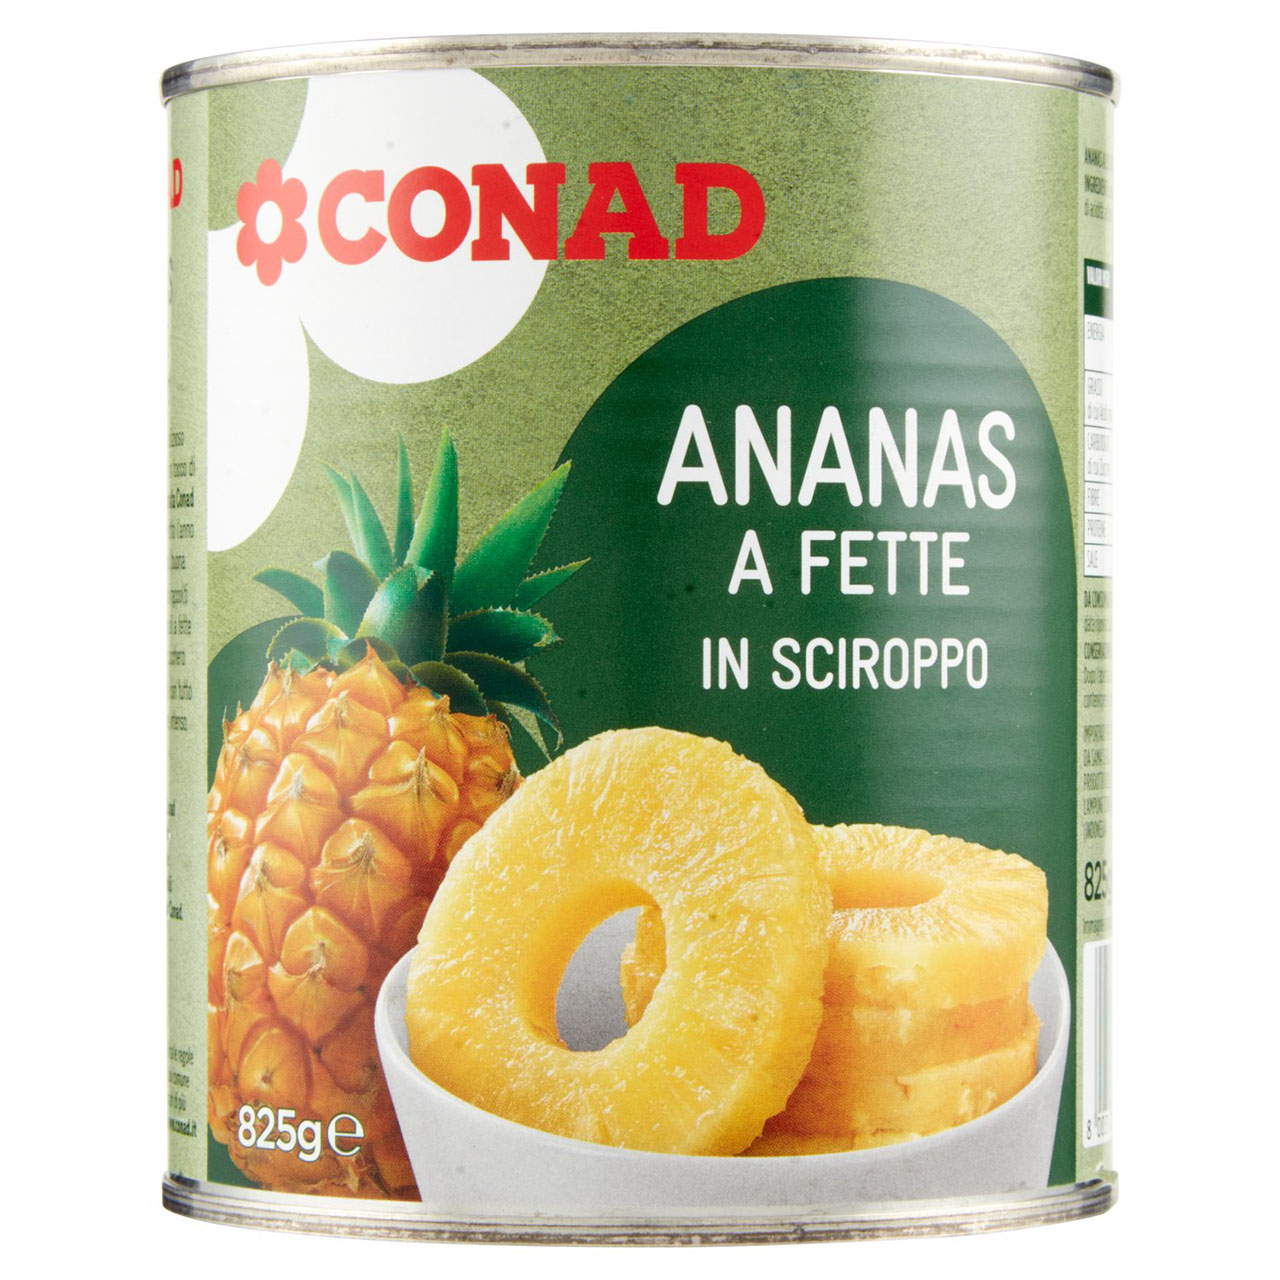 Ananas a Fette in Sciroppo 825 g Conad